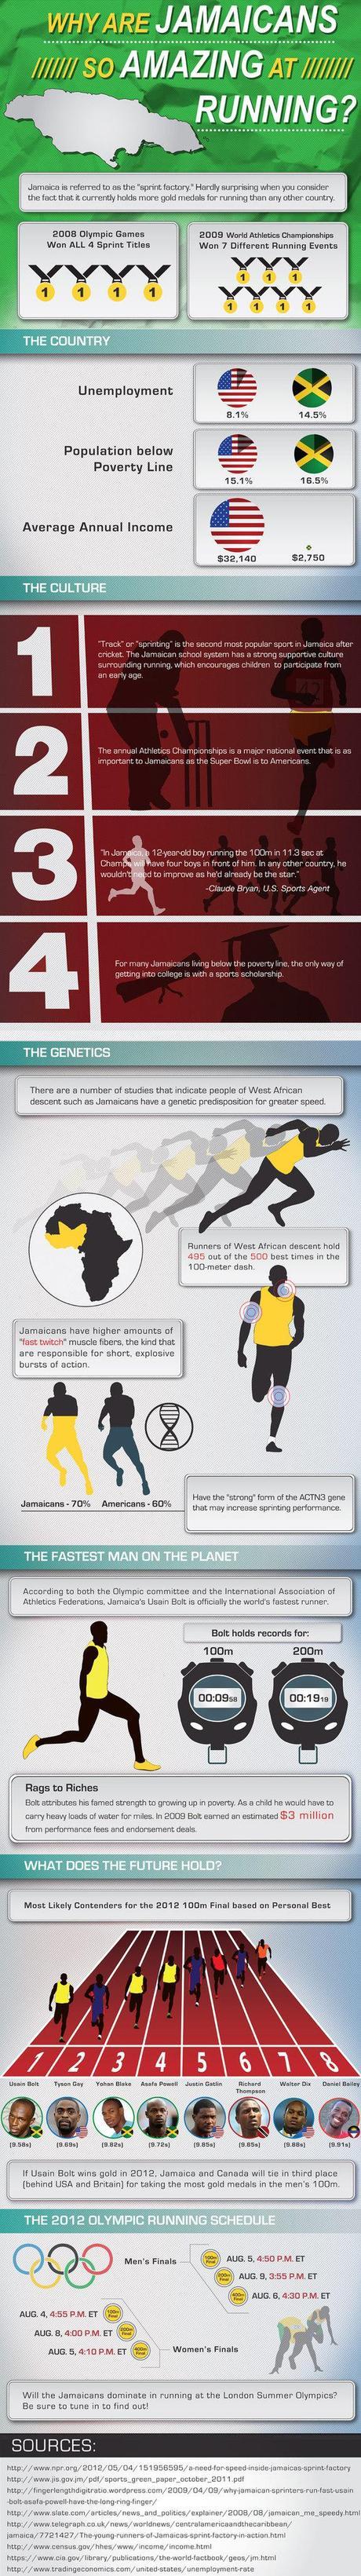 Jamaica running infographic